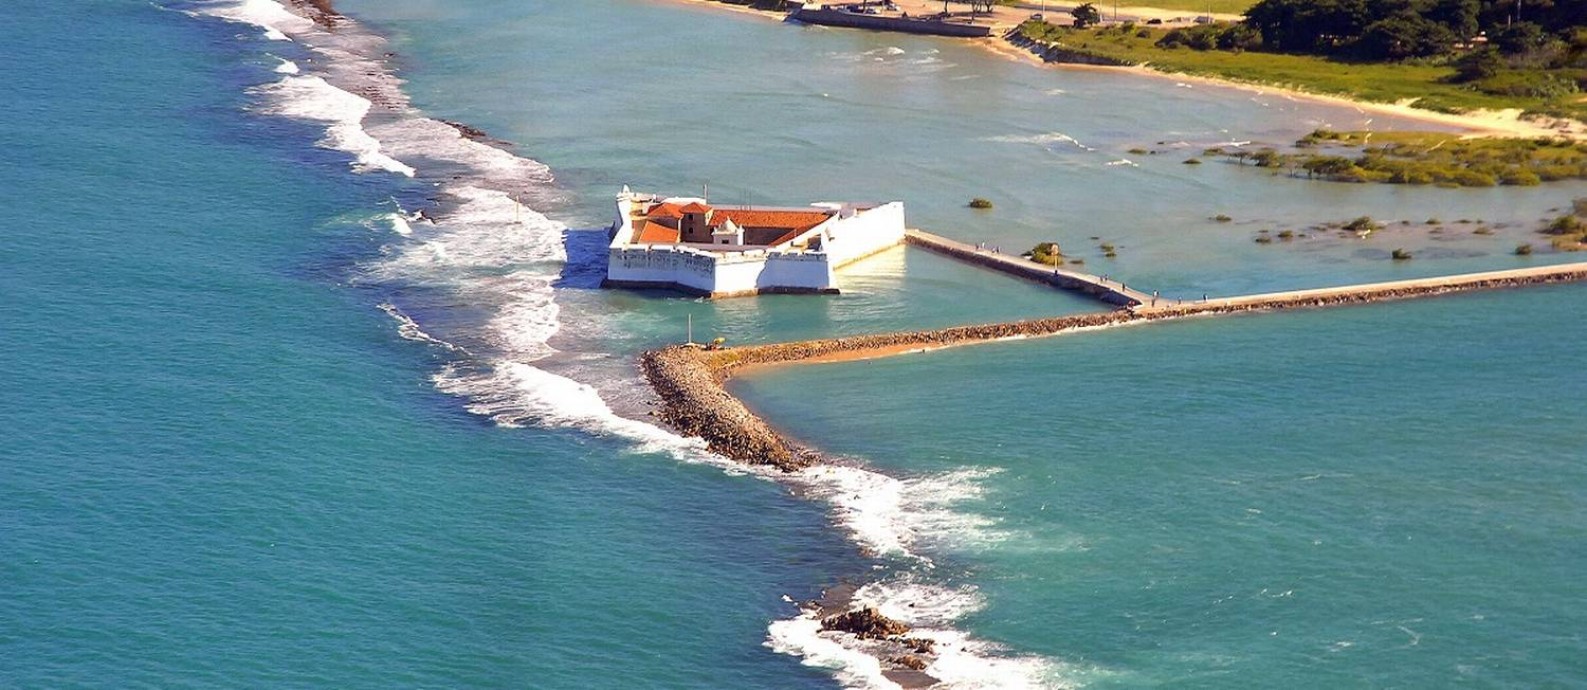 Imagem aérea do Forte dos Reis Magos, em Natal, no Rio Grande do Norte Foto: Ney Douglas / Ministério do Turismo / Divulgação